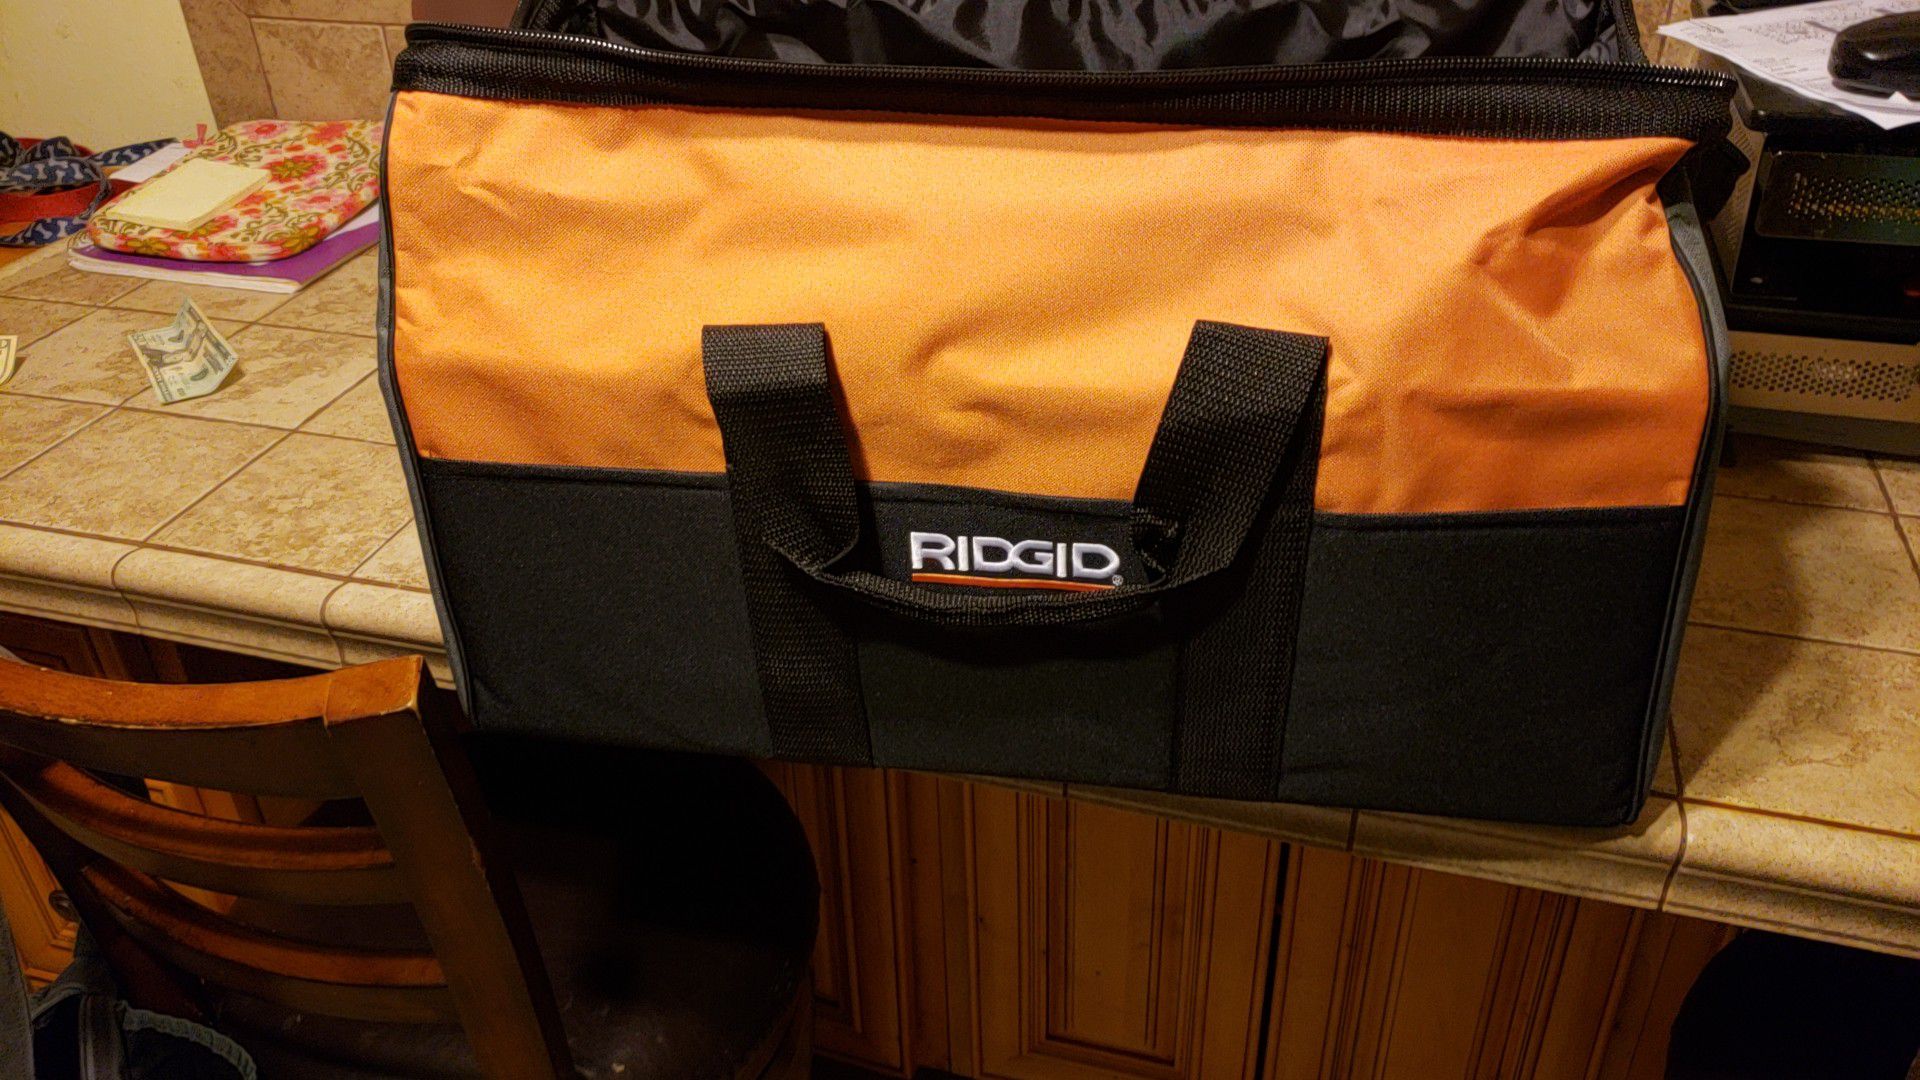 Contractors Ridgid tool bag